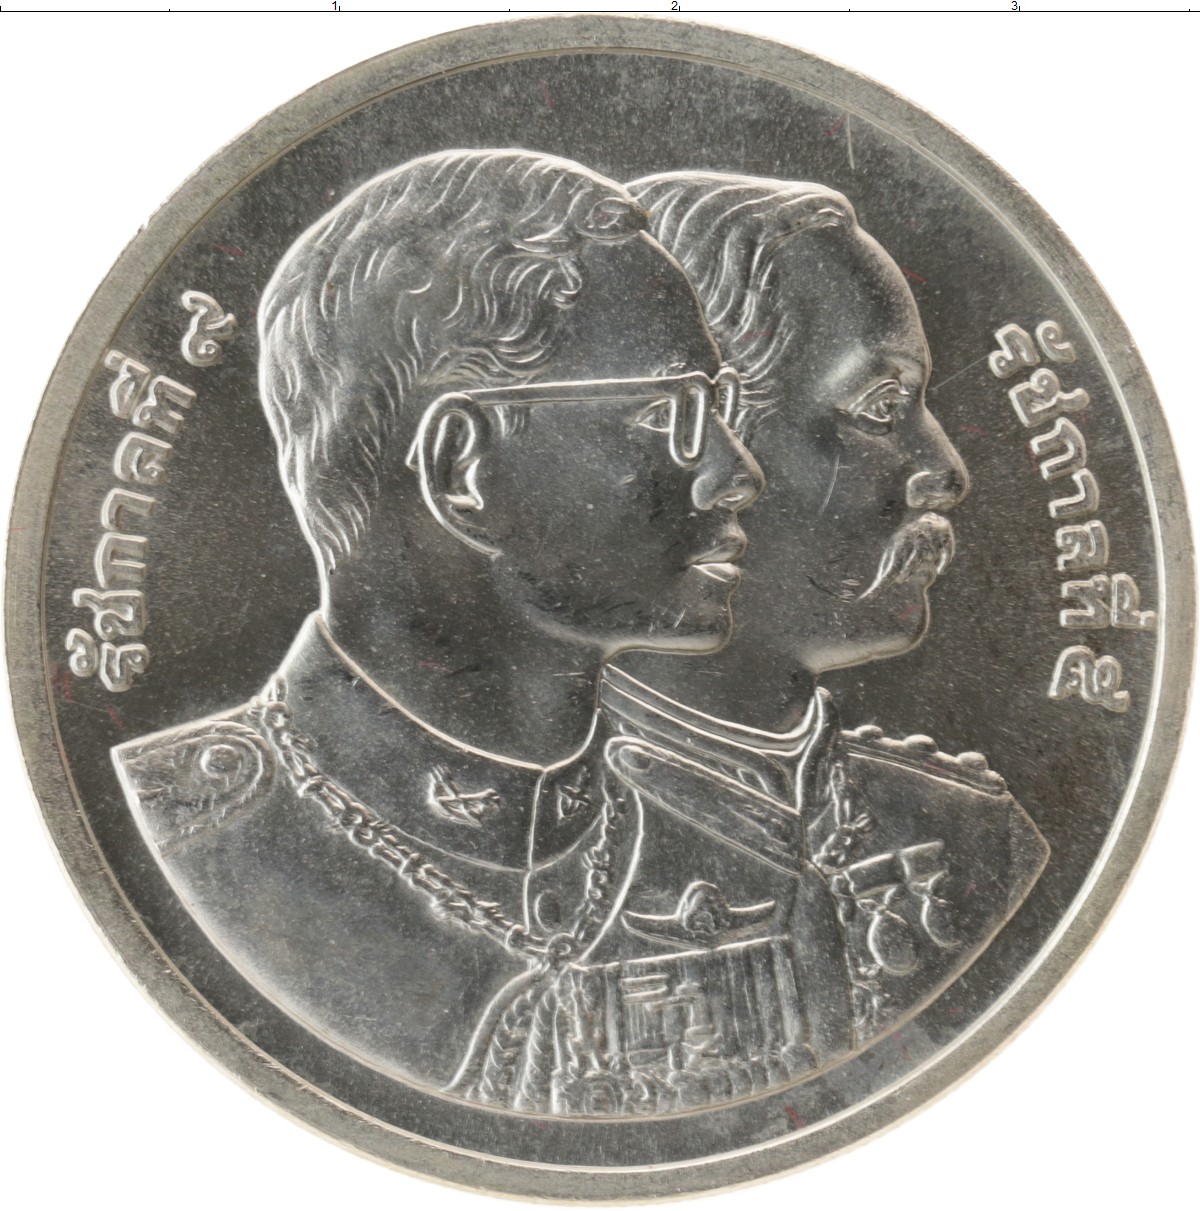 600 бат. 600 Бат Таиланд монета серебро. Монета Таиланд 5 бат 1995. Монета Таиланда 1 бат 1986 года. 600 Батов.